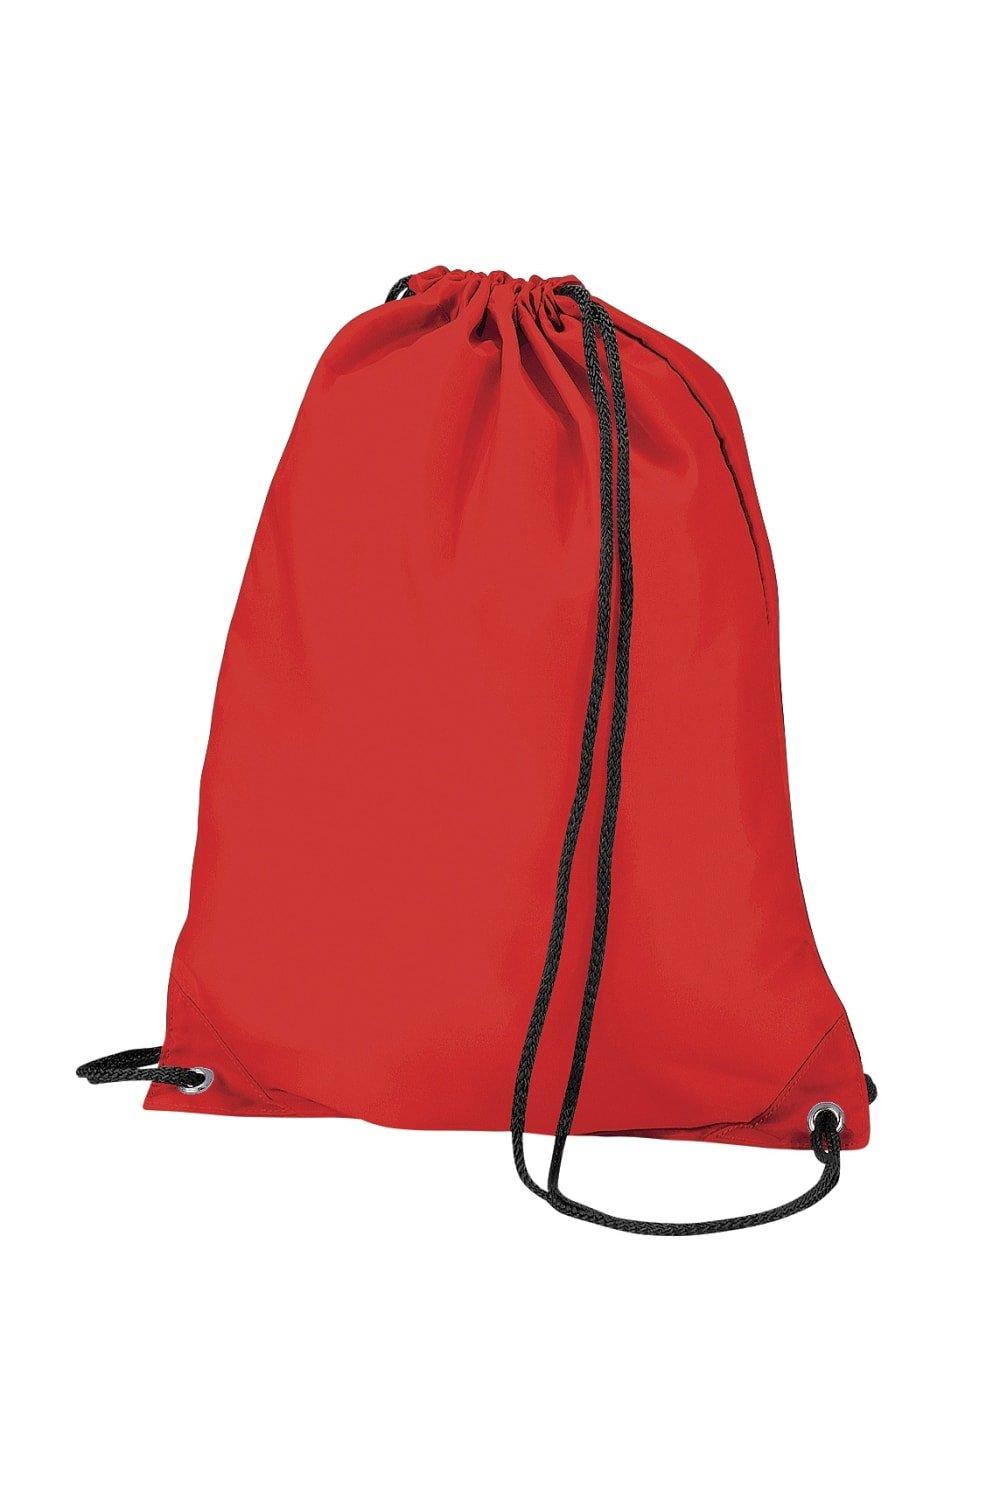 Бюджетная водостойкая спортивная сумка Gymsac на шнурке (11 л) Bagbase, красный